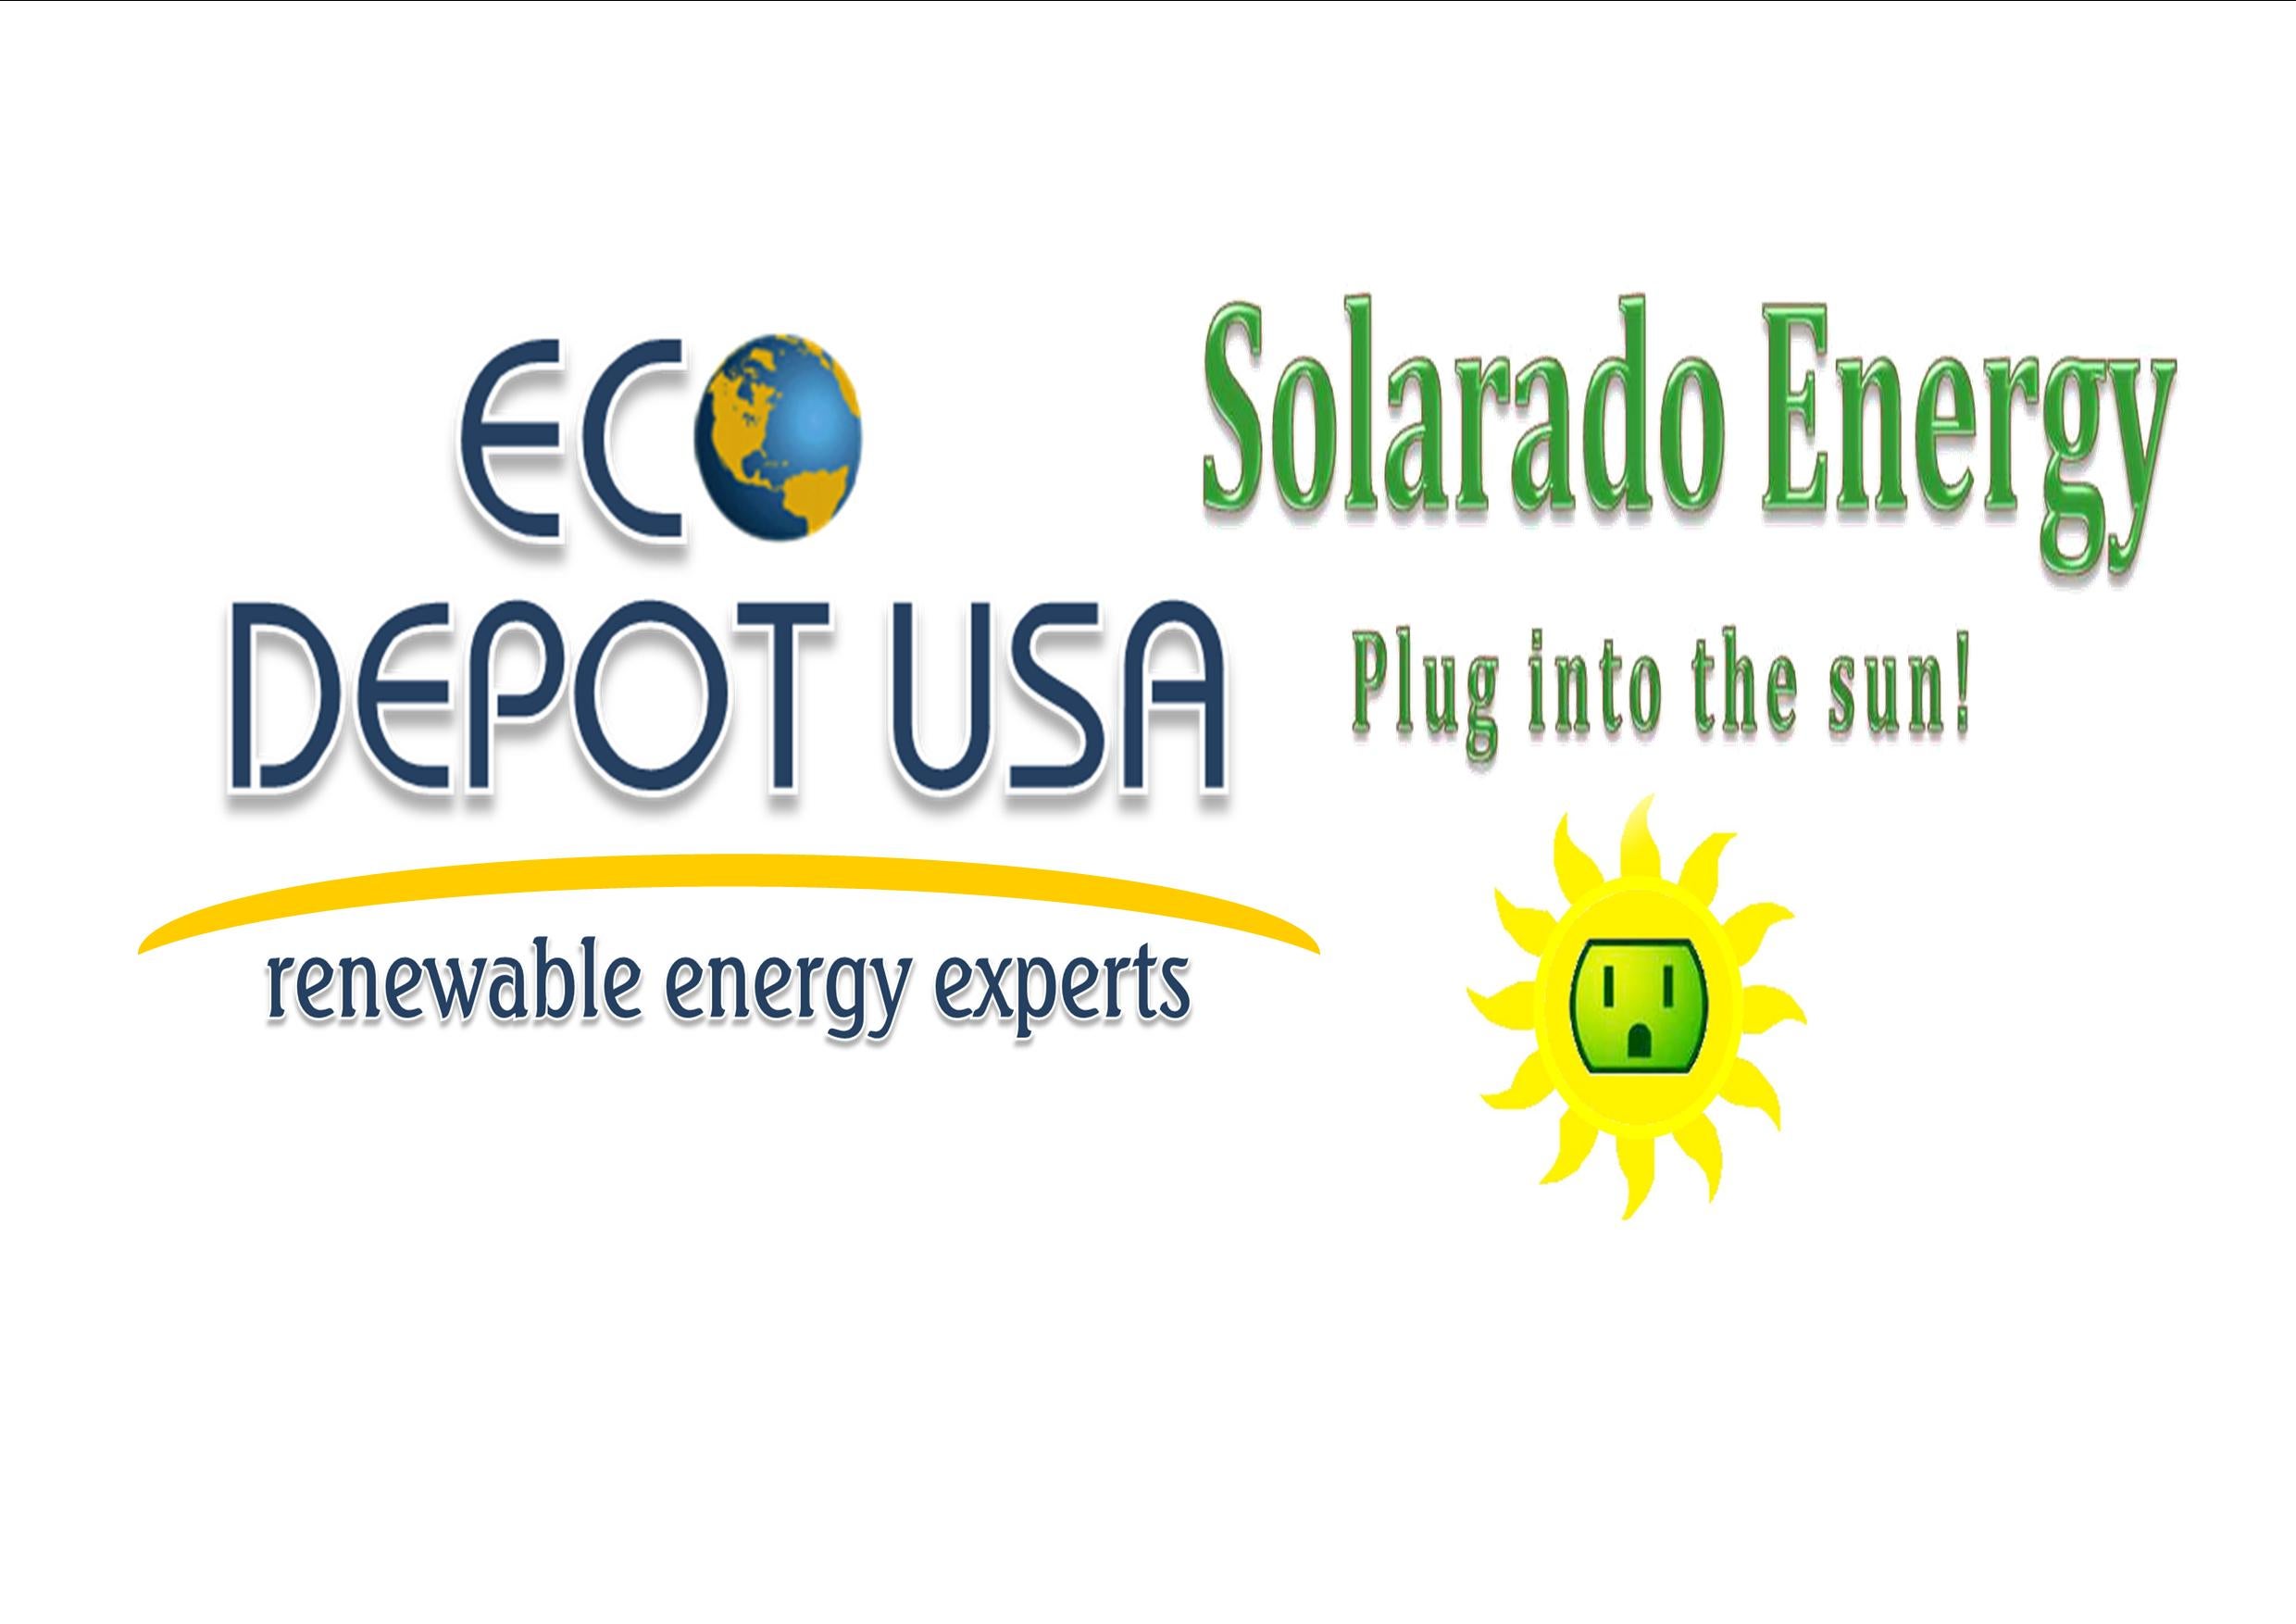 Eco Depot USA / Solarado Energy